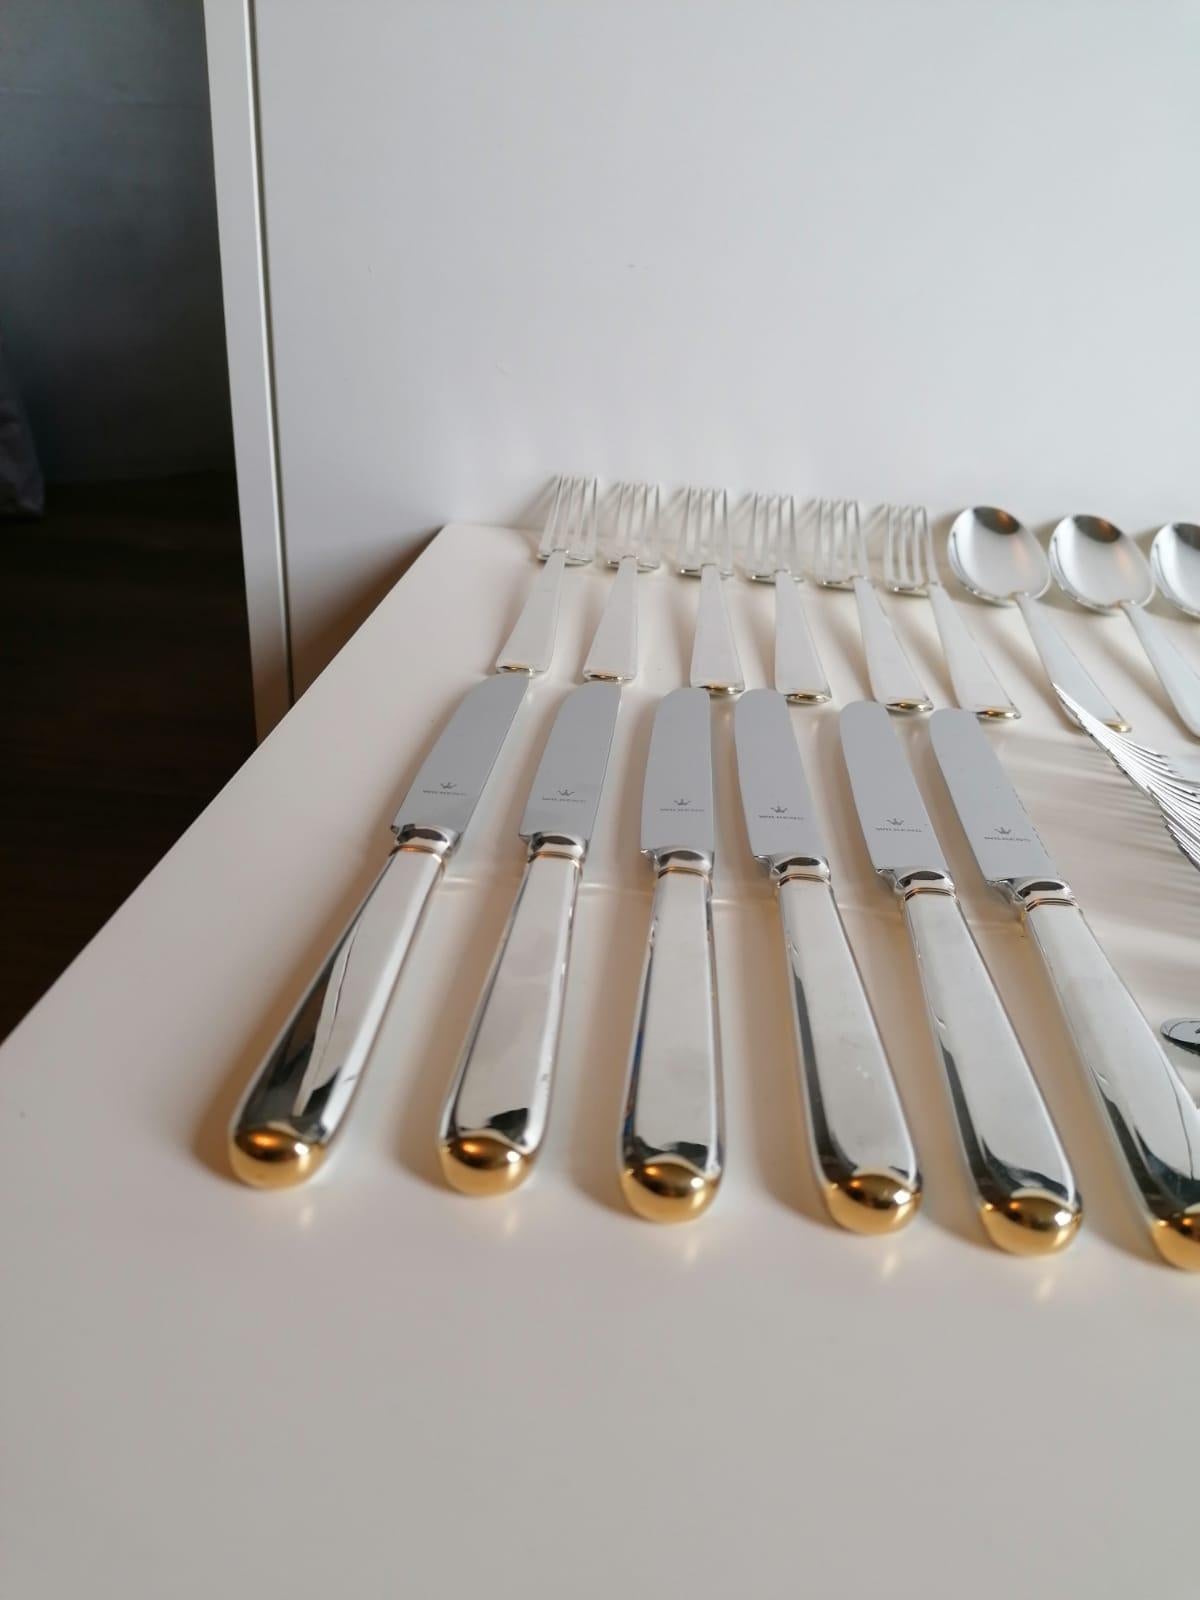 Flatware Cutlery by Wilkens & Sohne Bremen 1